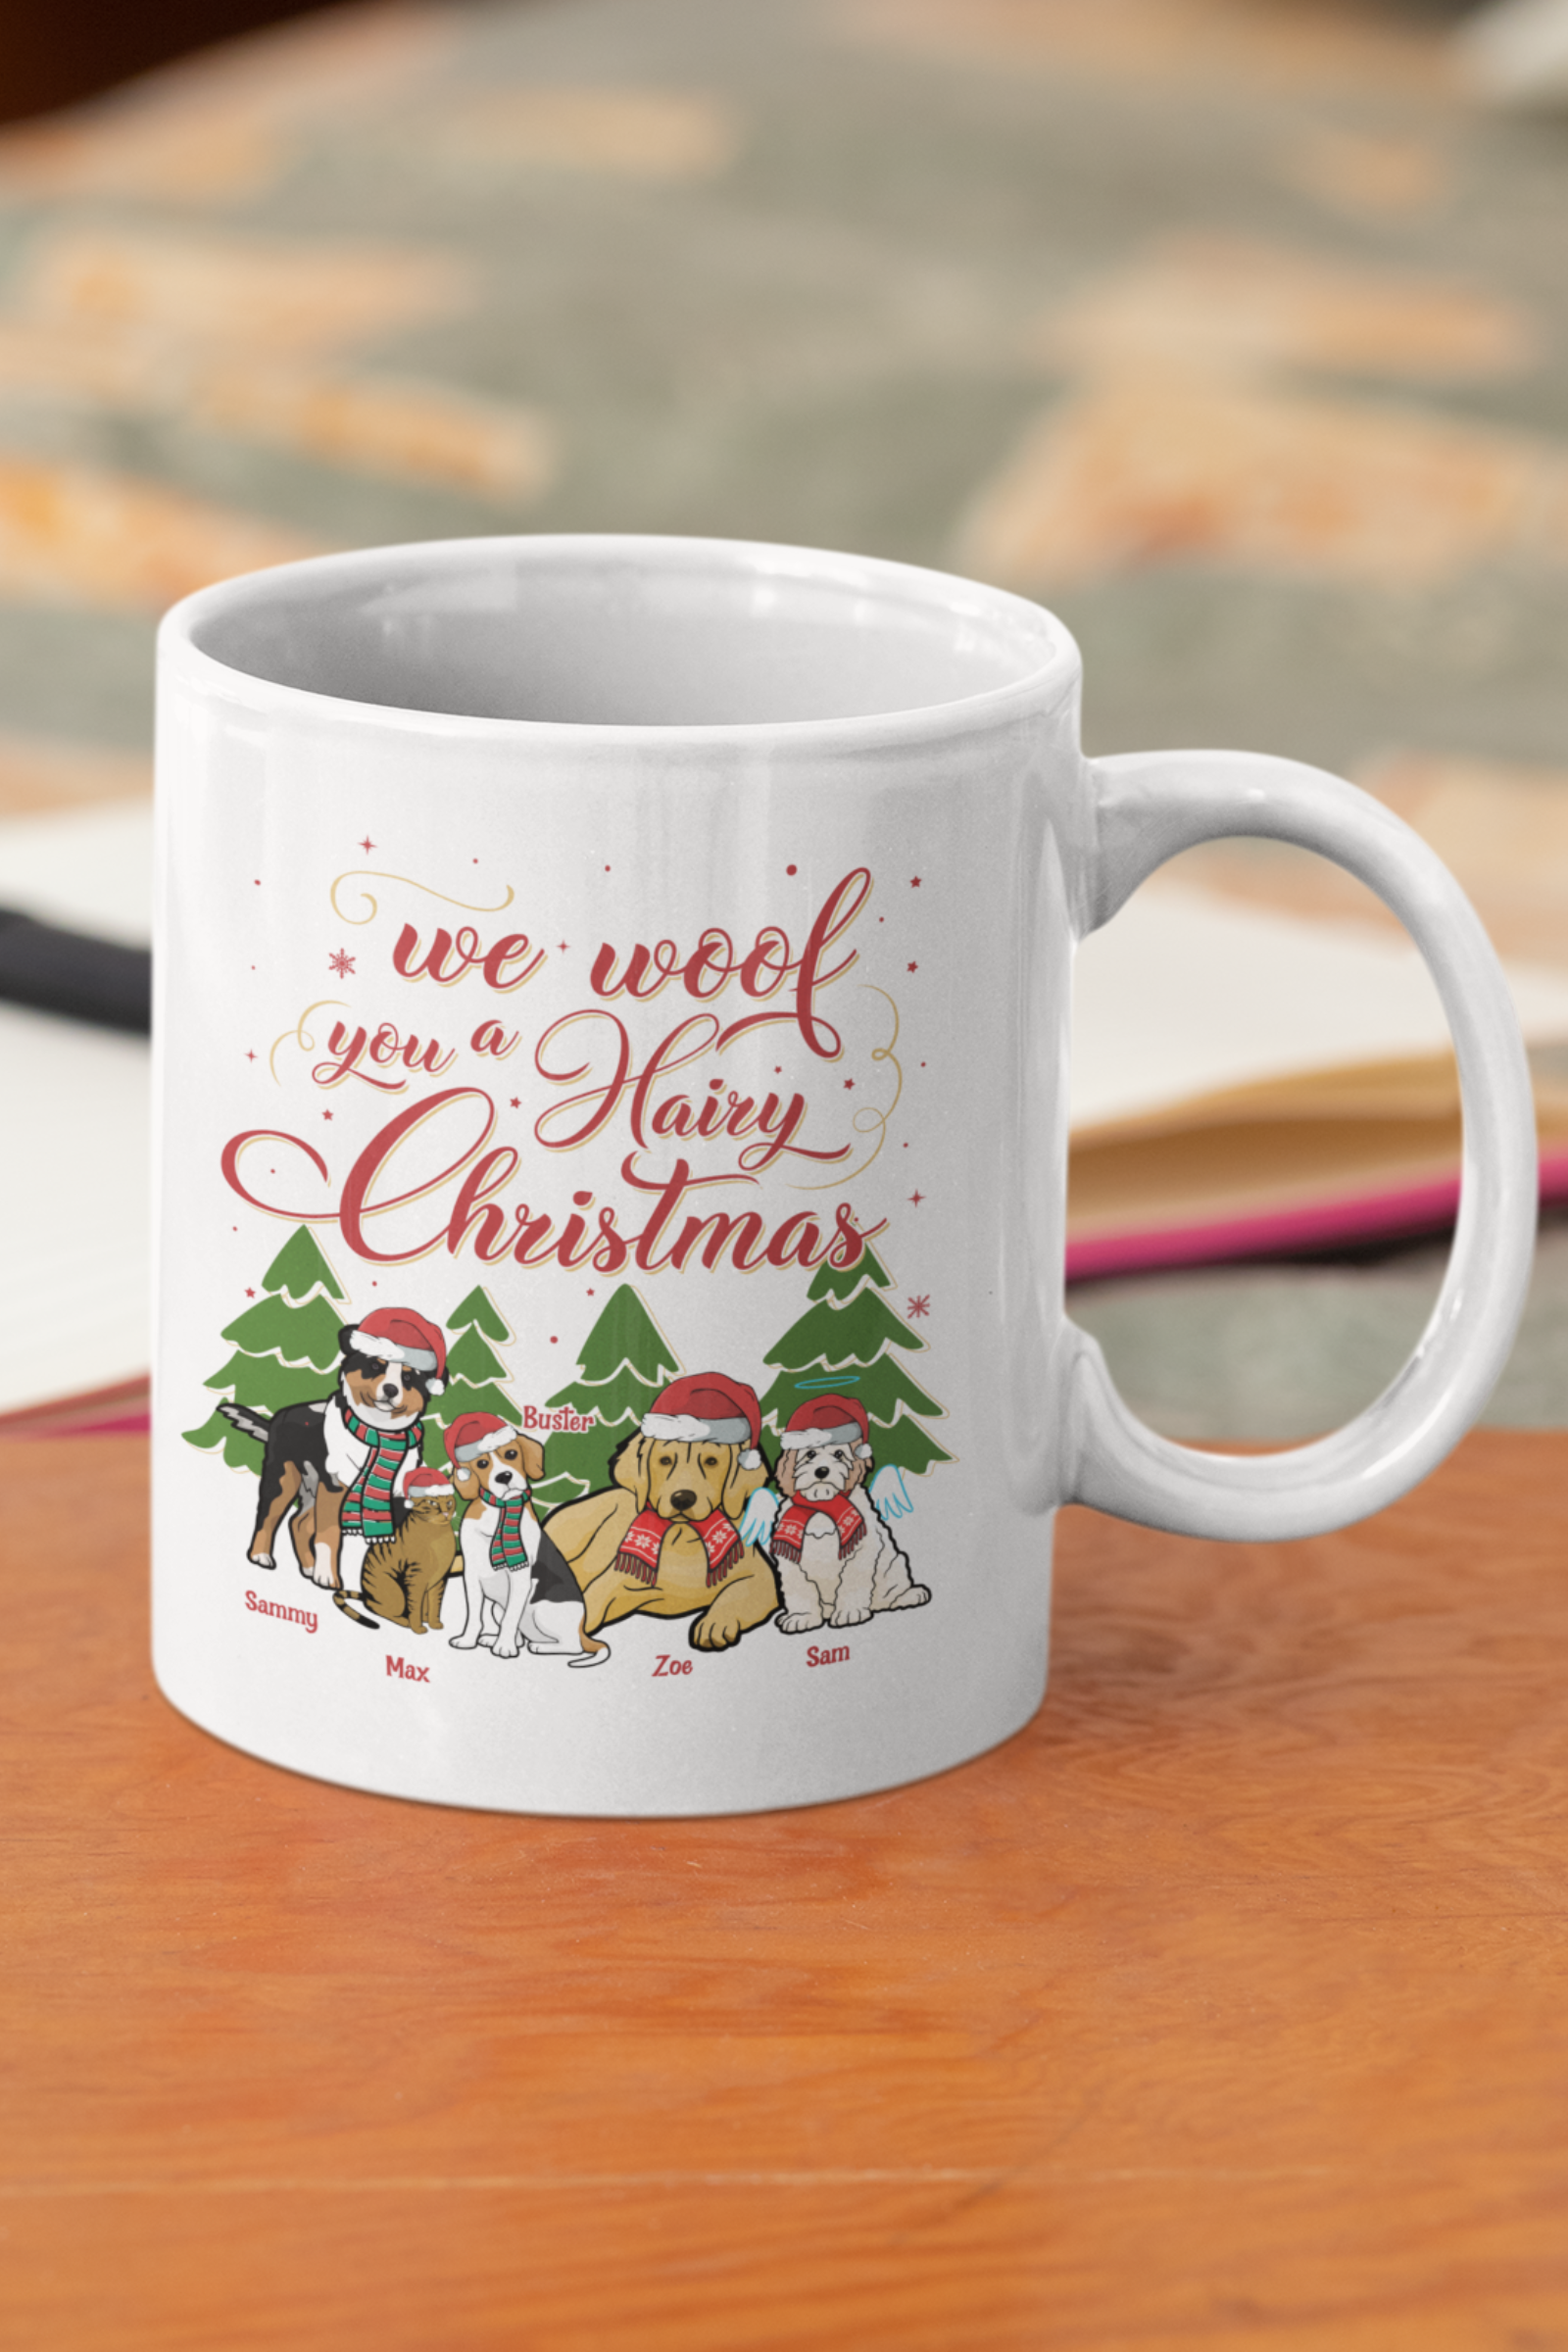 Classic Mugs Christmas Themed Coffee Mug for Pet Lovers